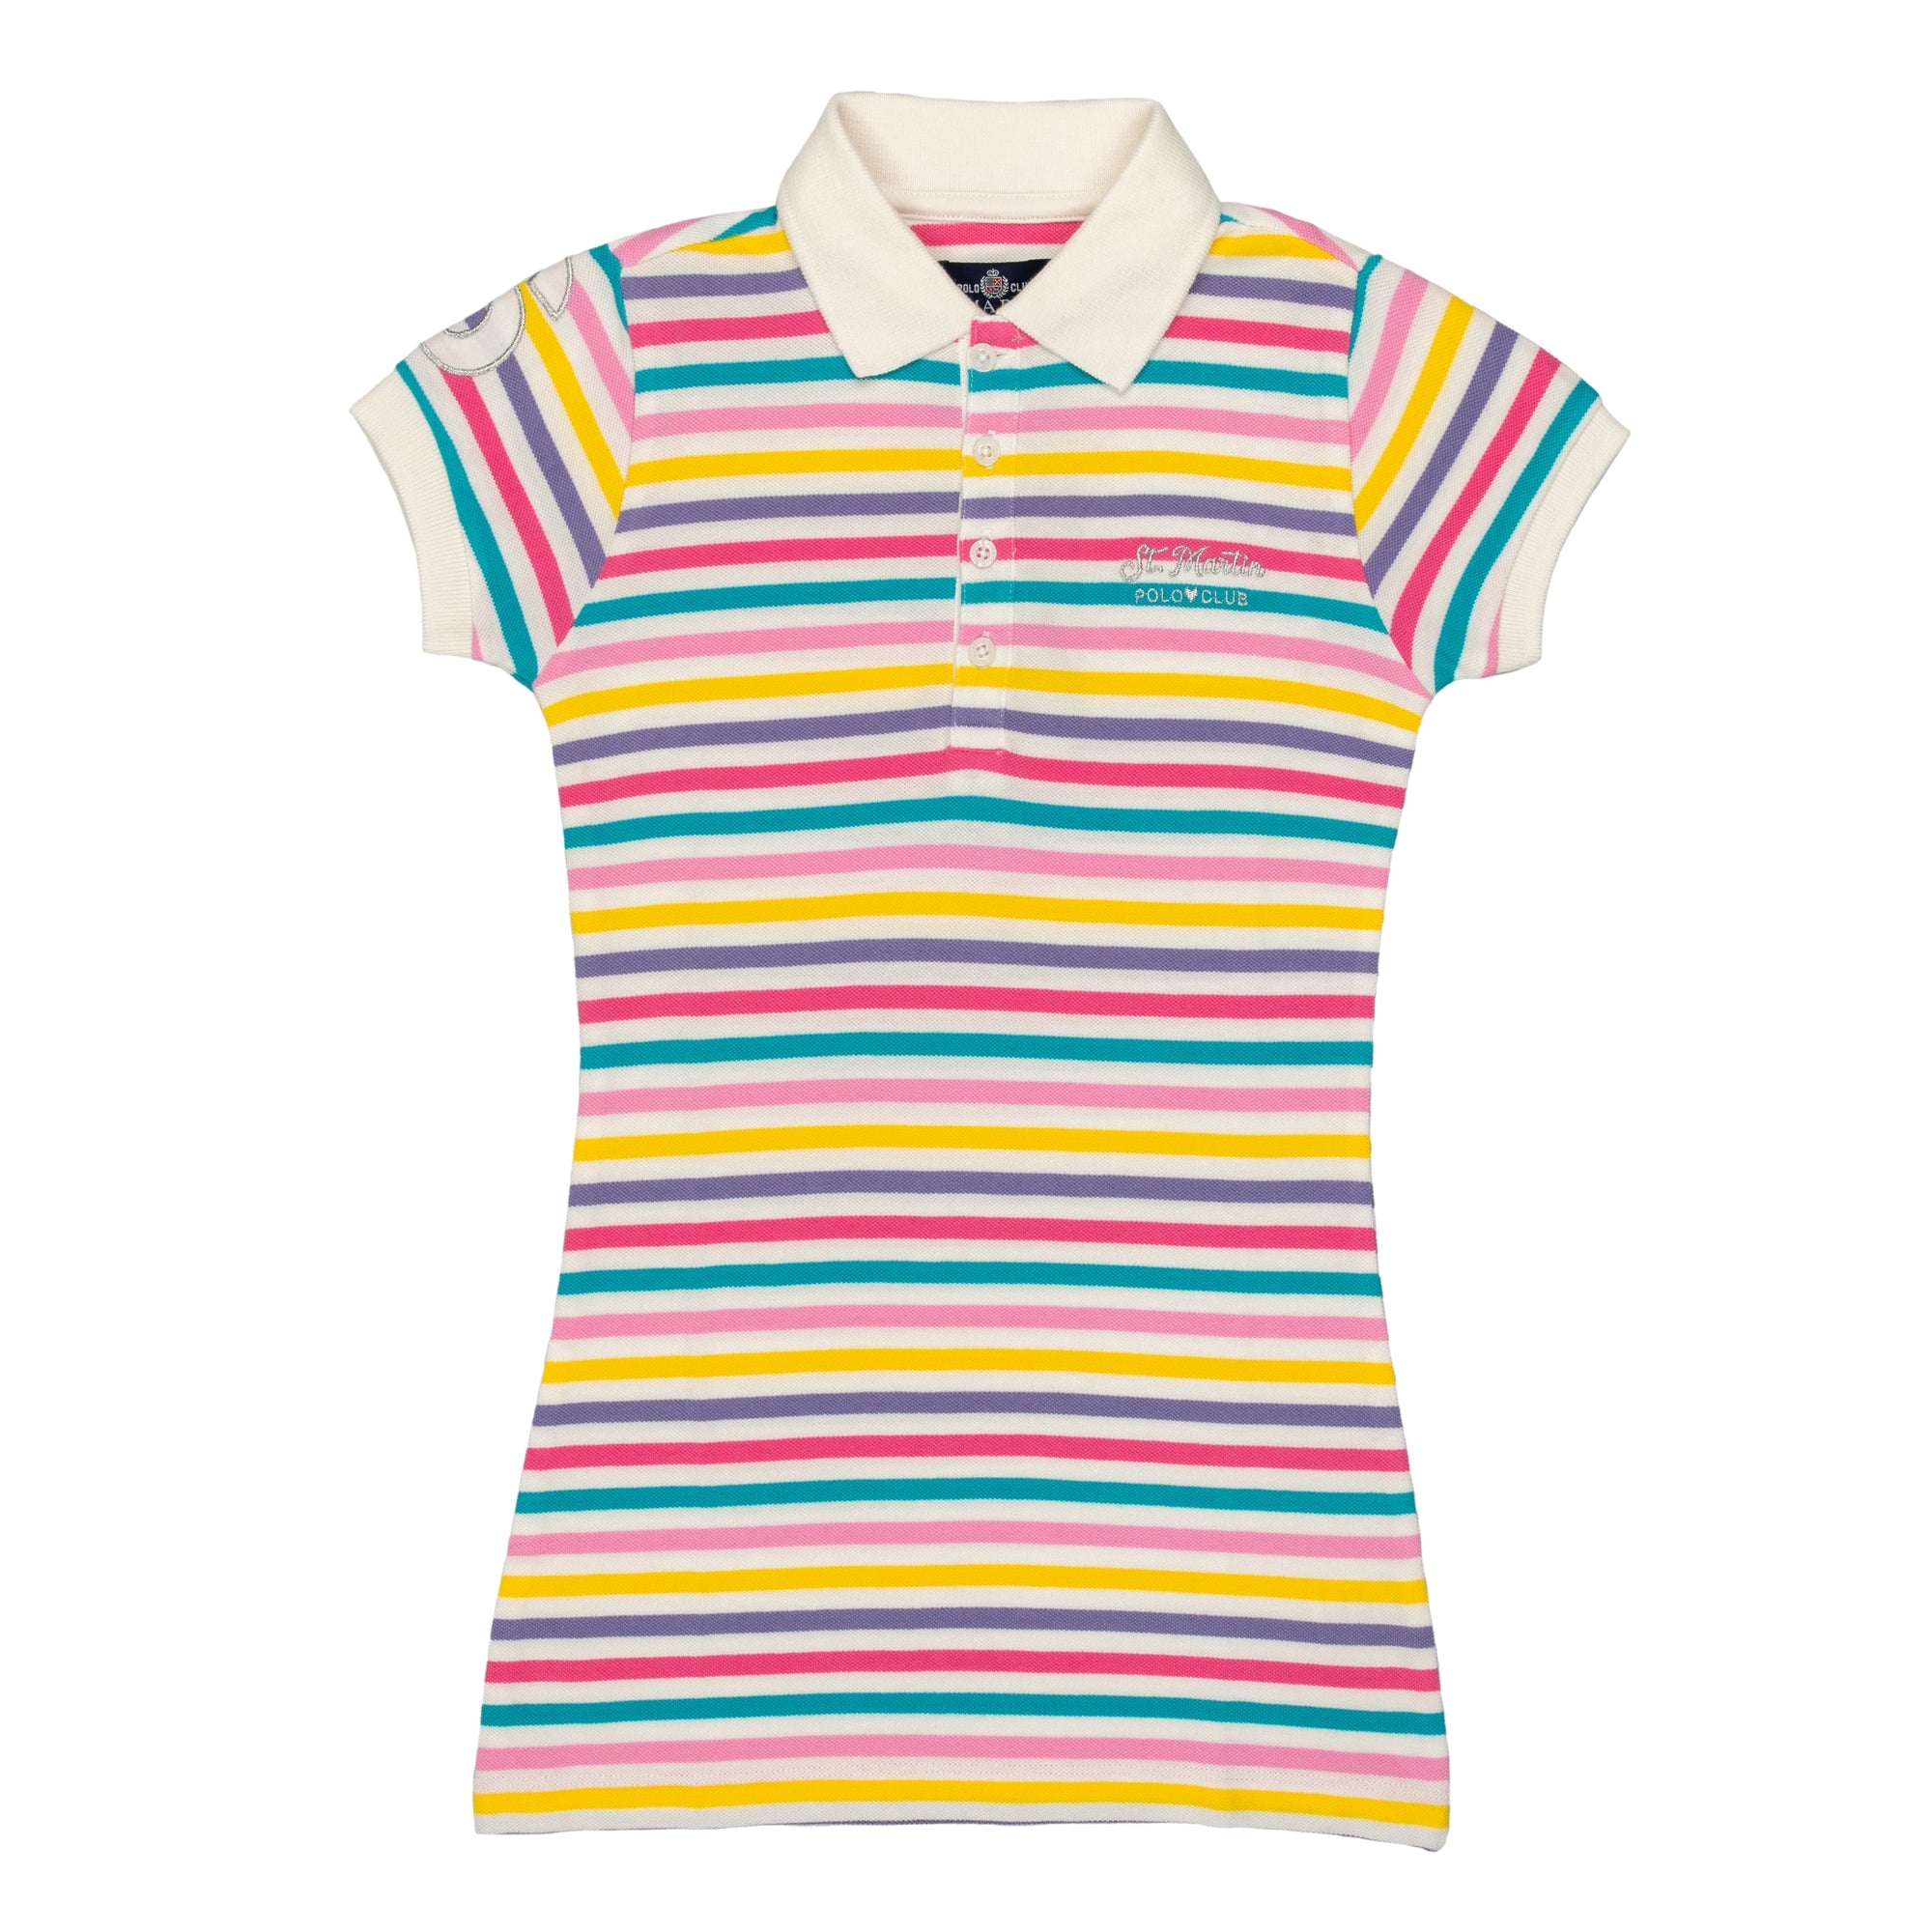 Multicolor striped piquet dress